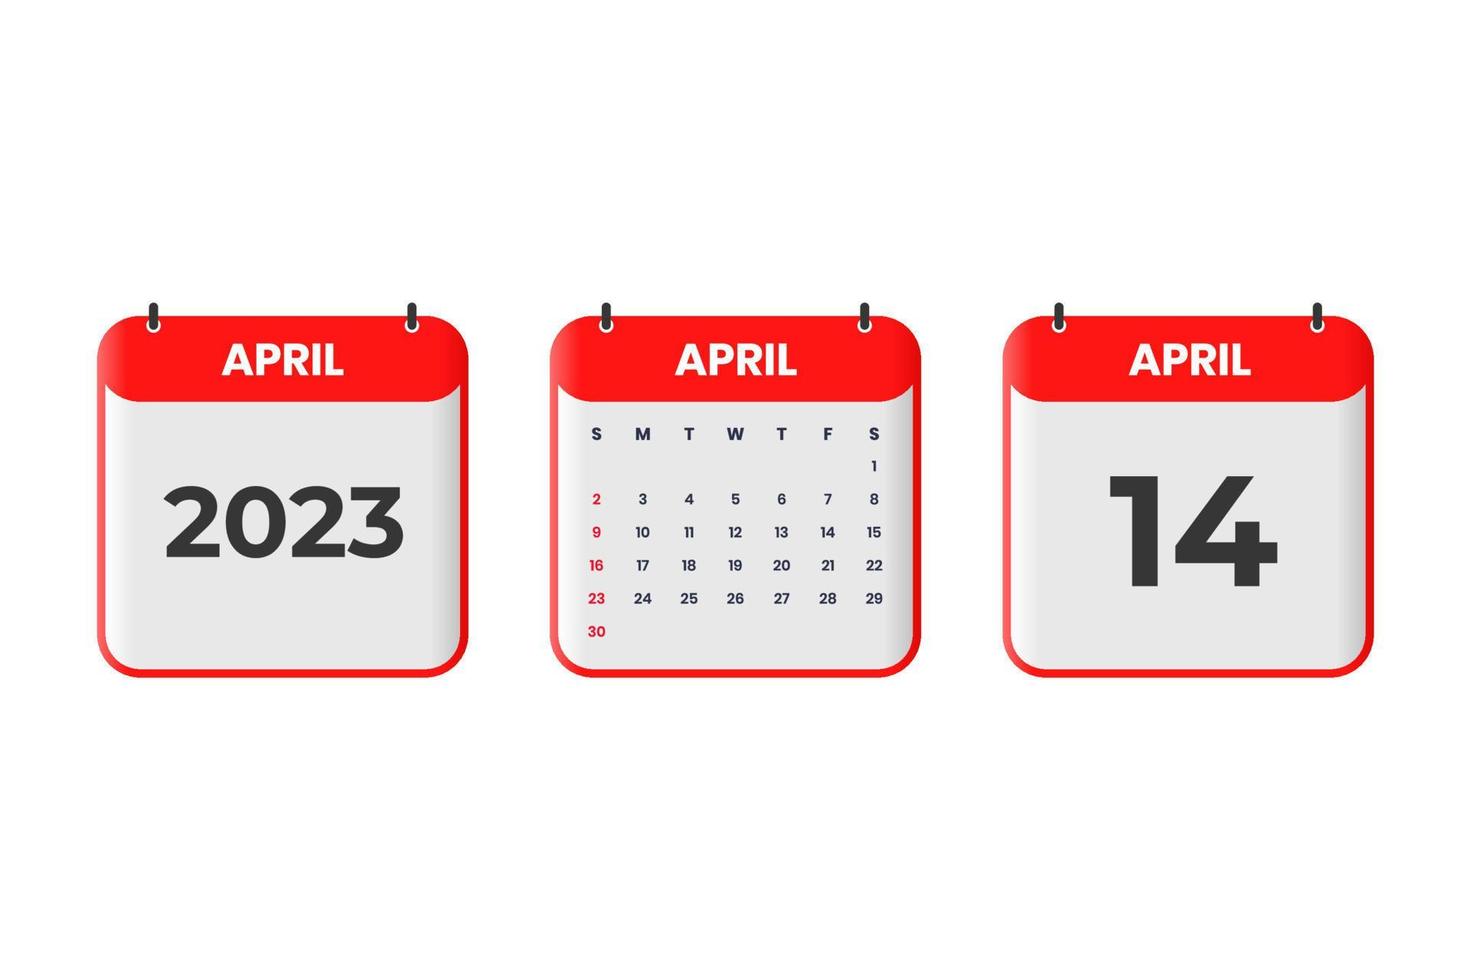 april 2023 kalender design. 14:e april 2023 kalender ikon för schema, utnämning, Viktig datum begrepp vektor